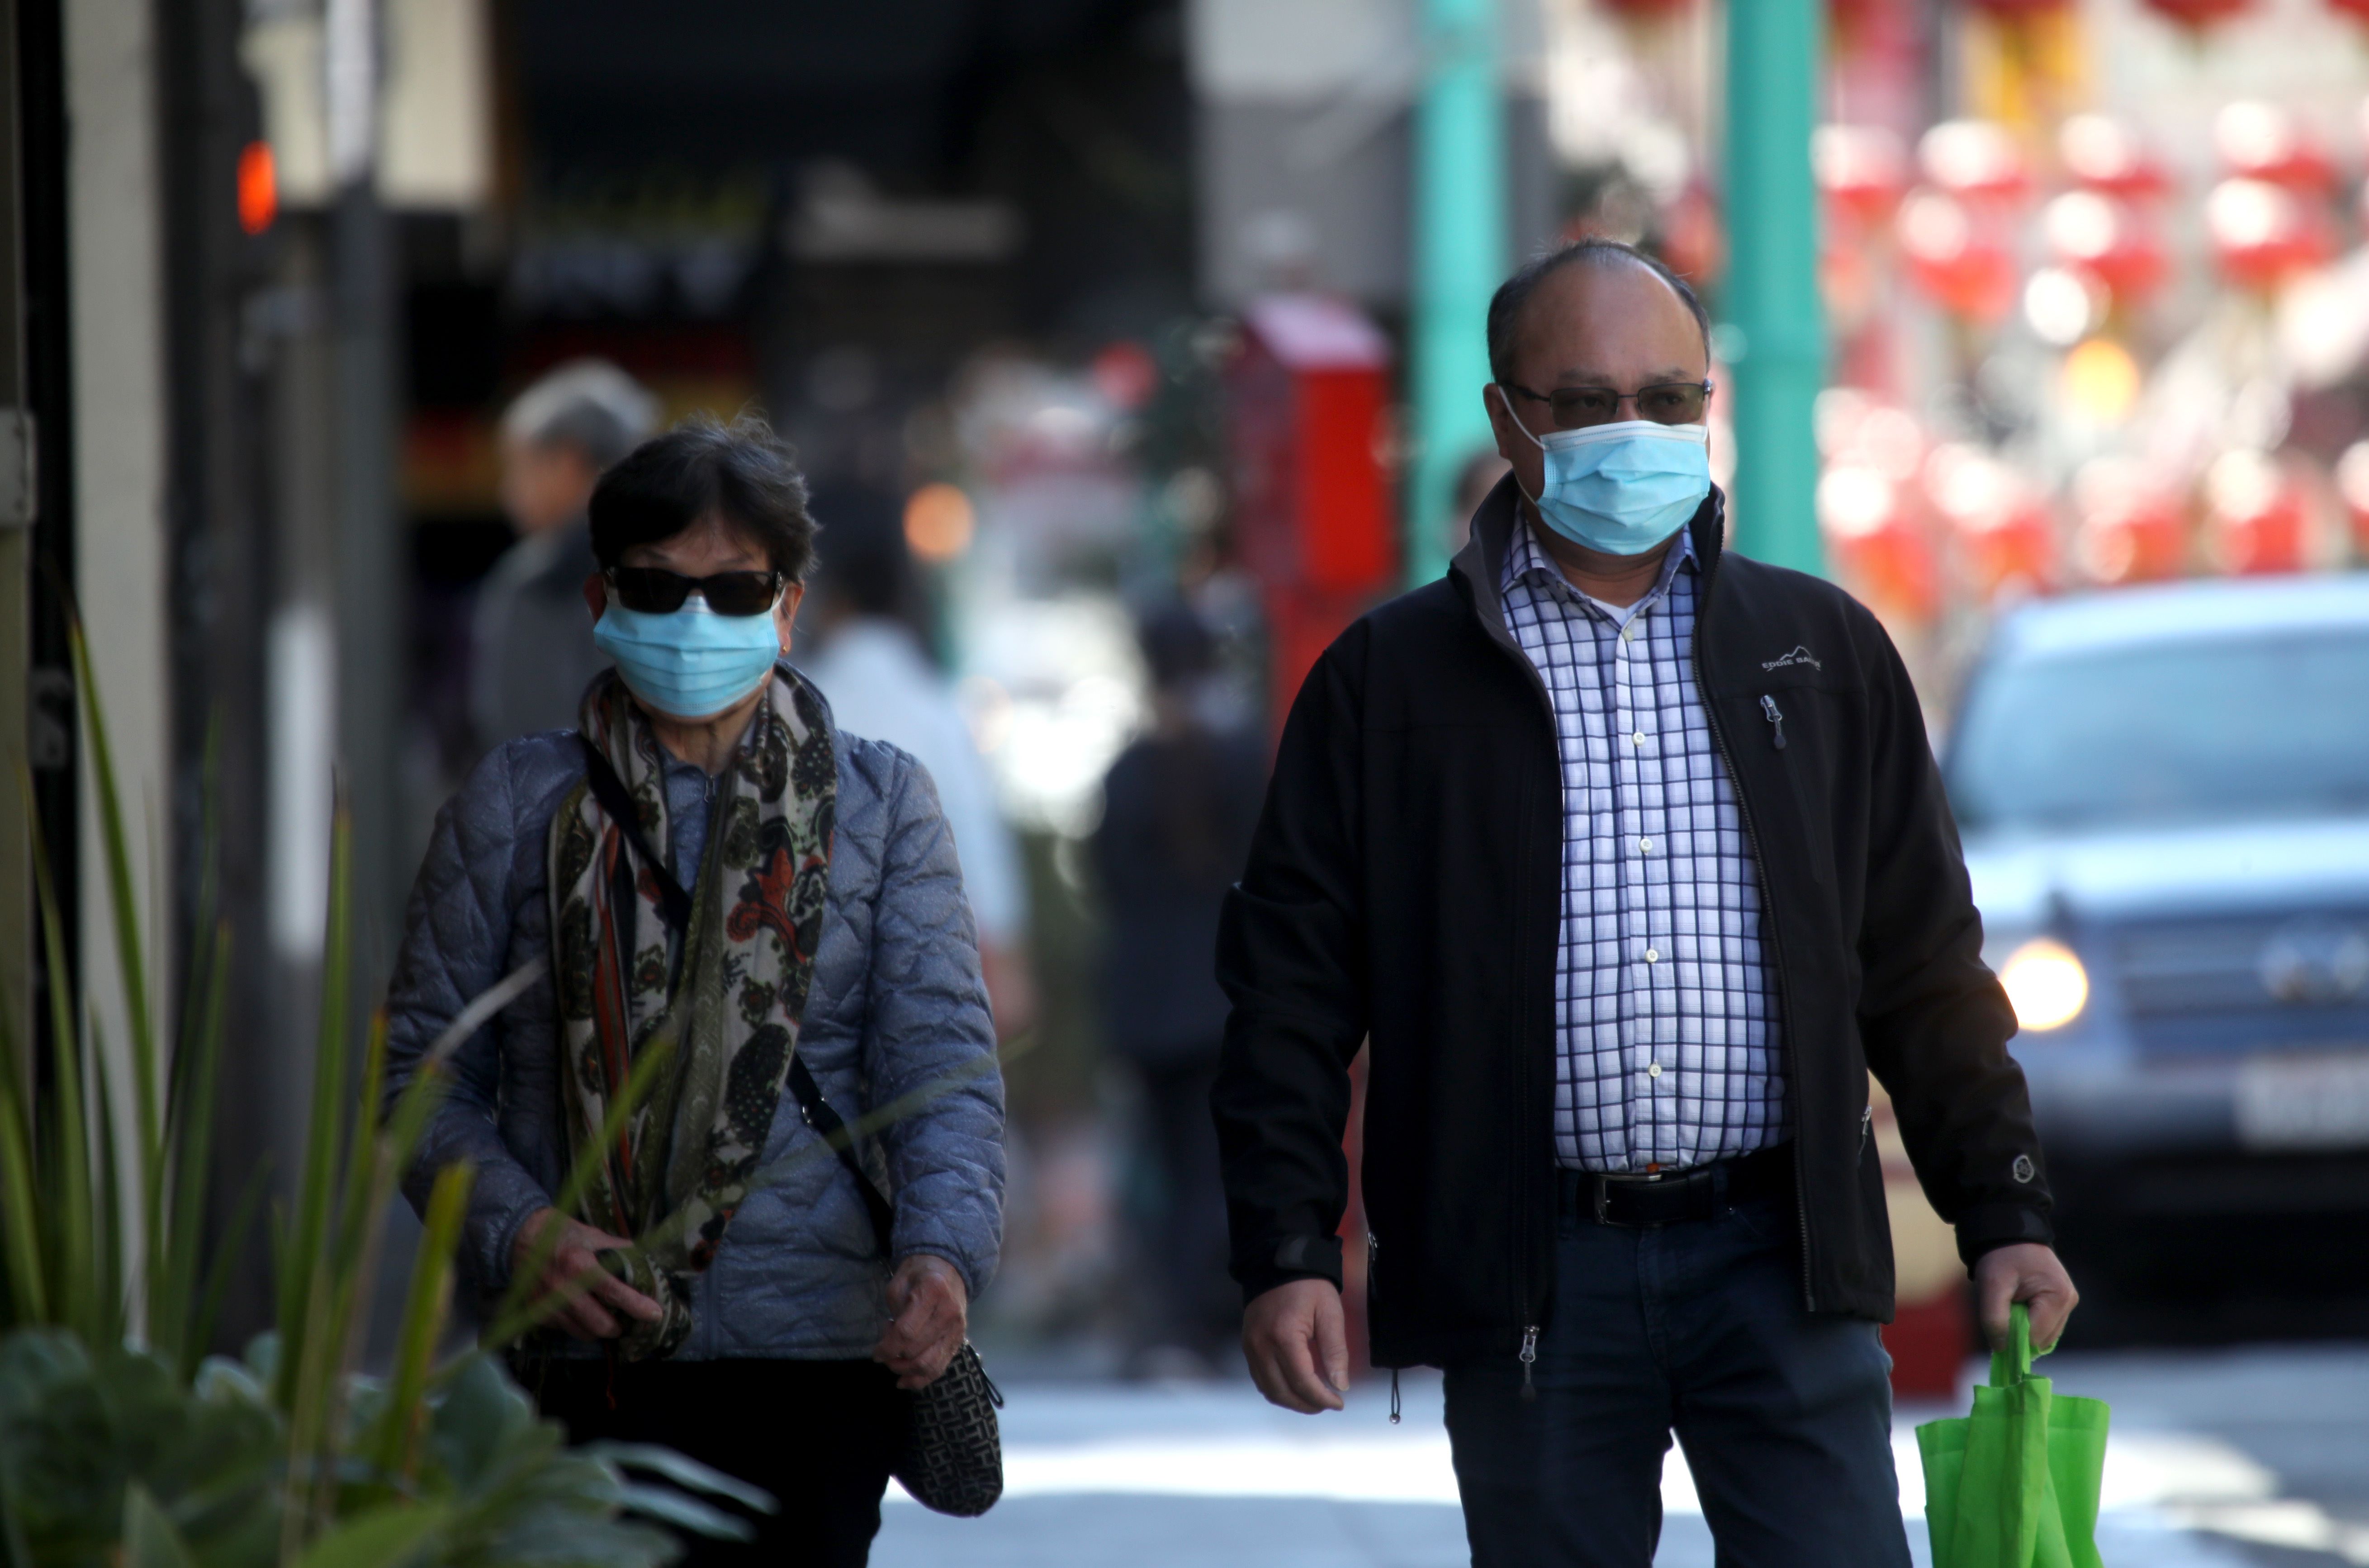 Californianos utilizan mascarillas al caminar por la calle en San Francisco. (Foto Prensa Libre: AFP)